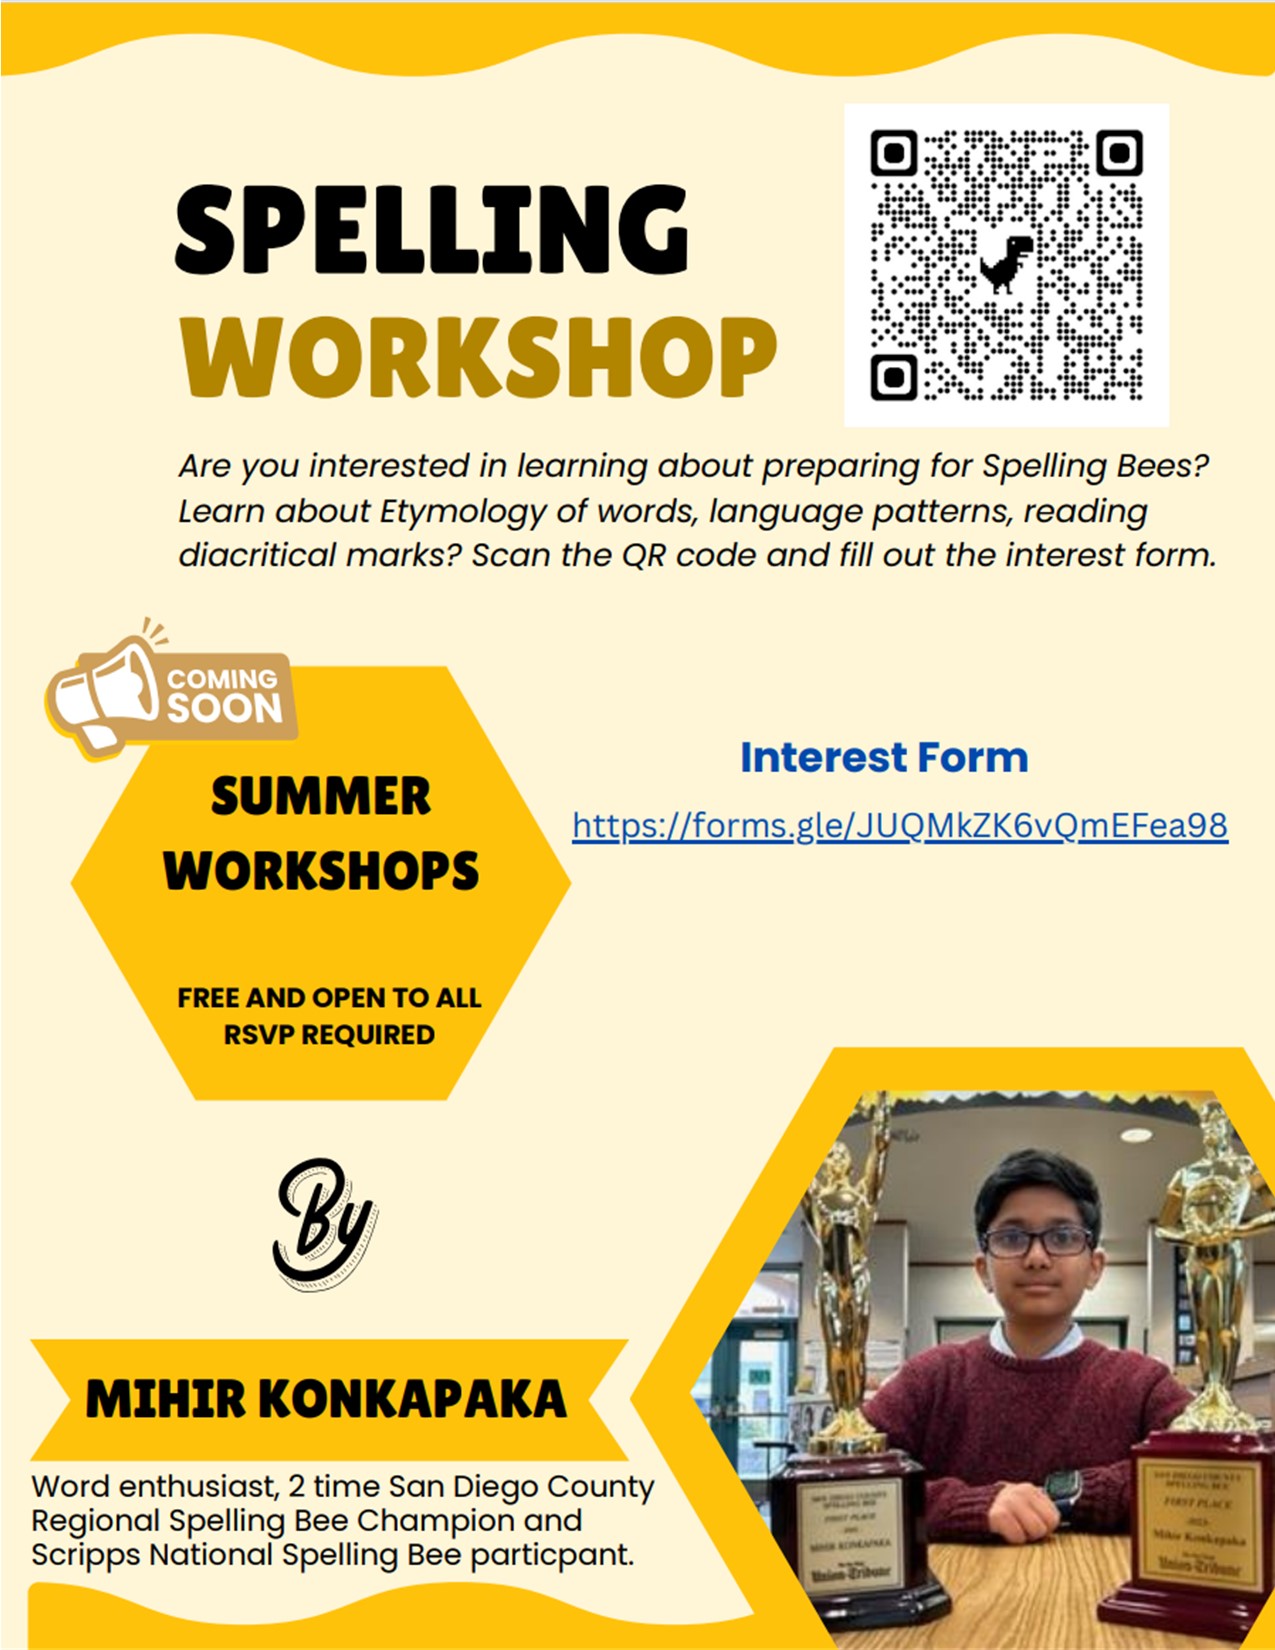 Description of the spelling workshop